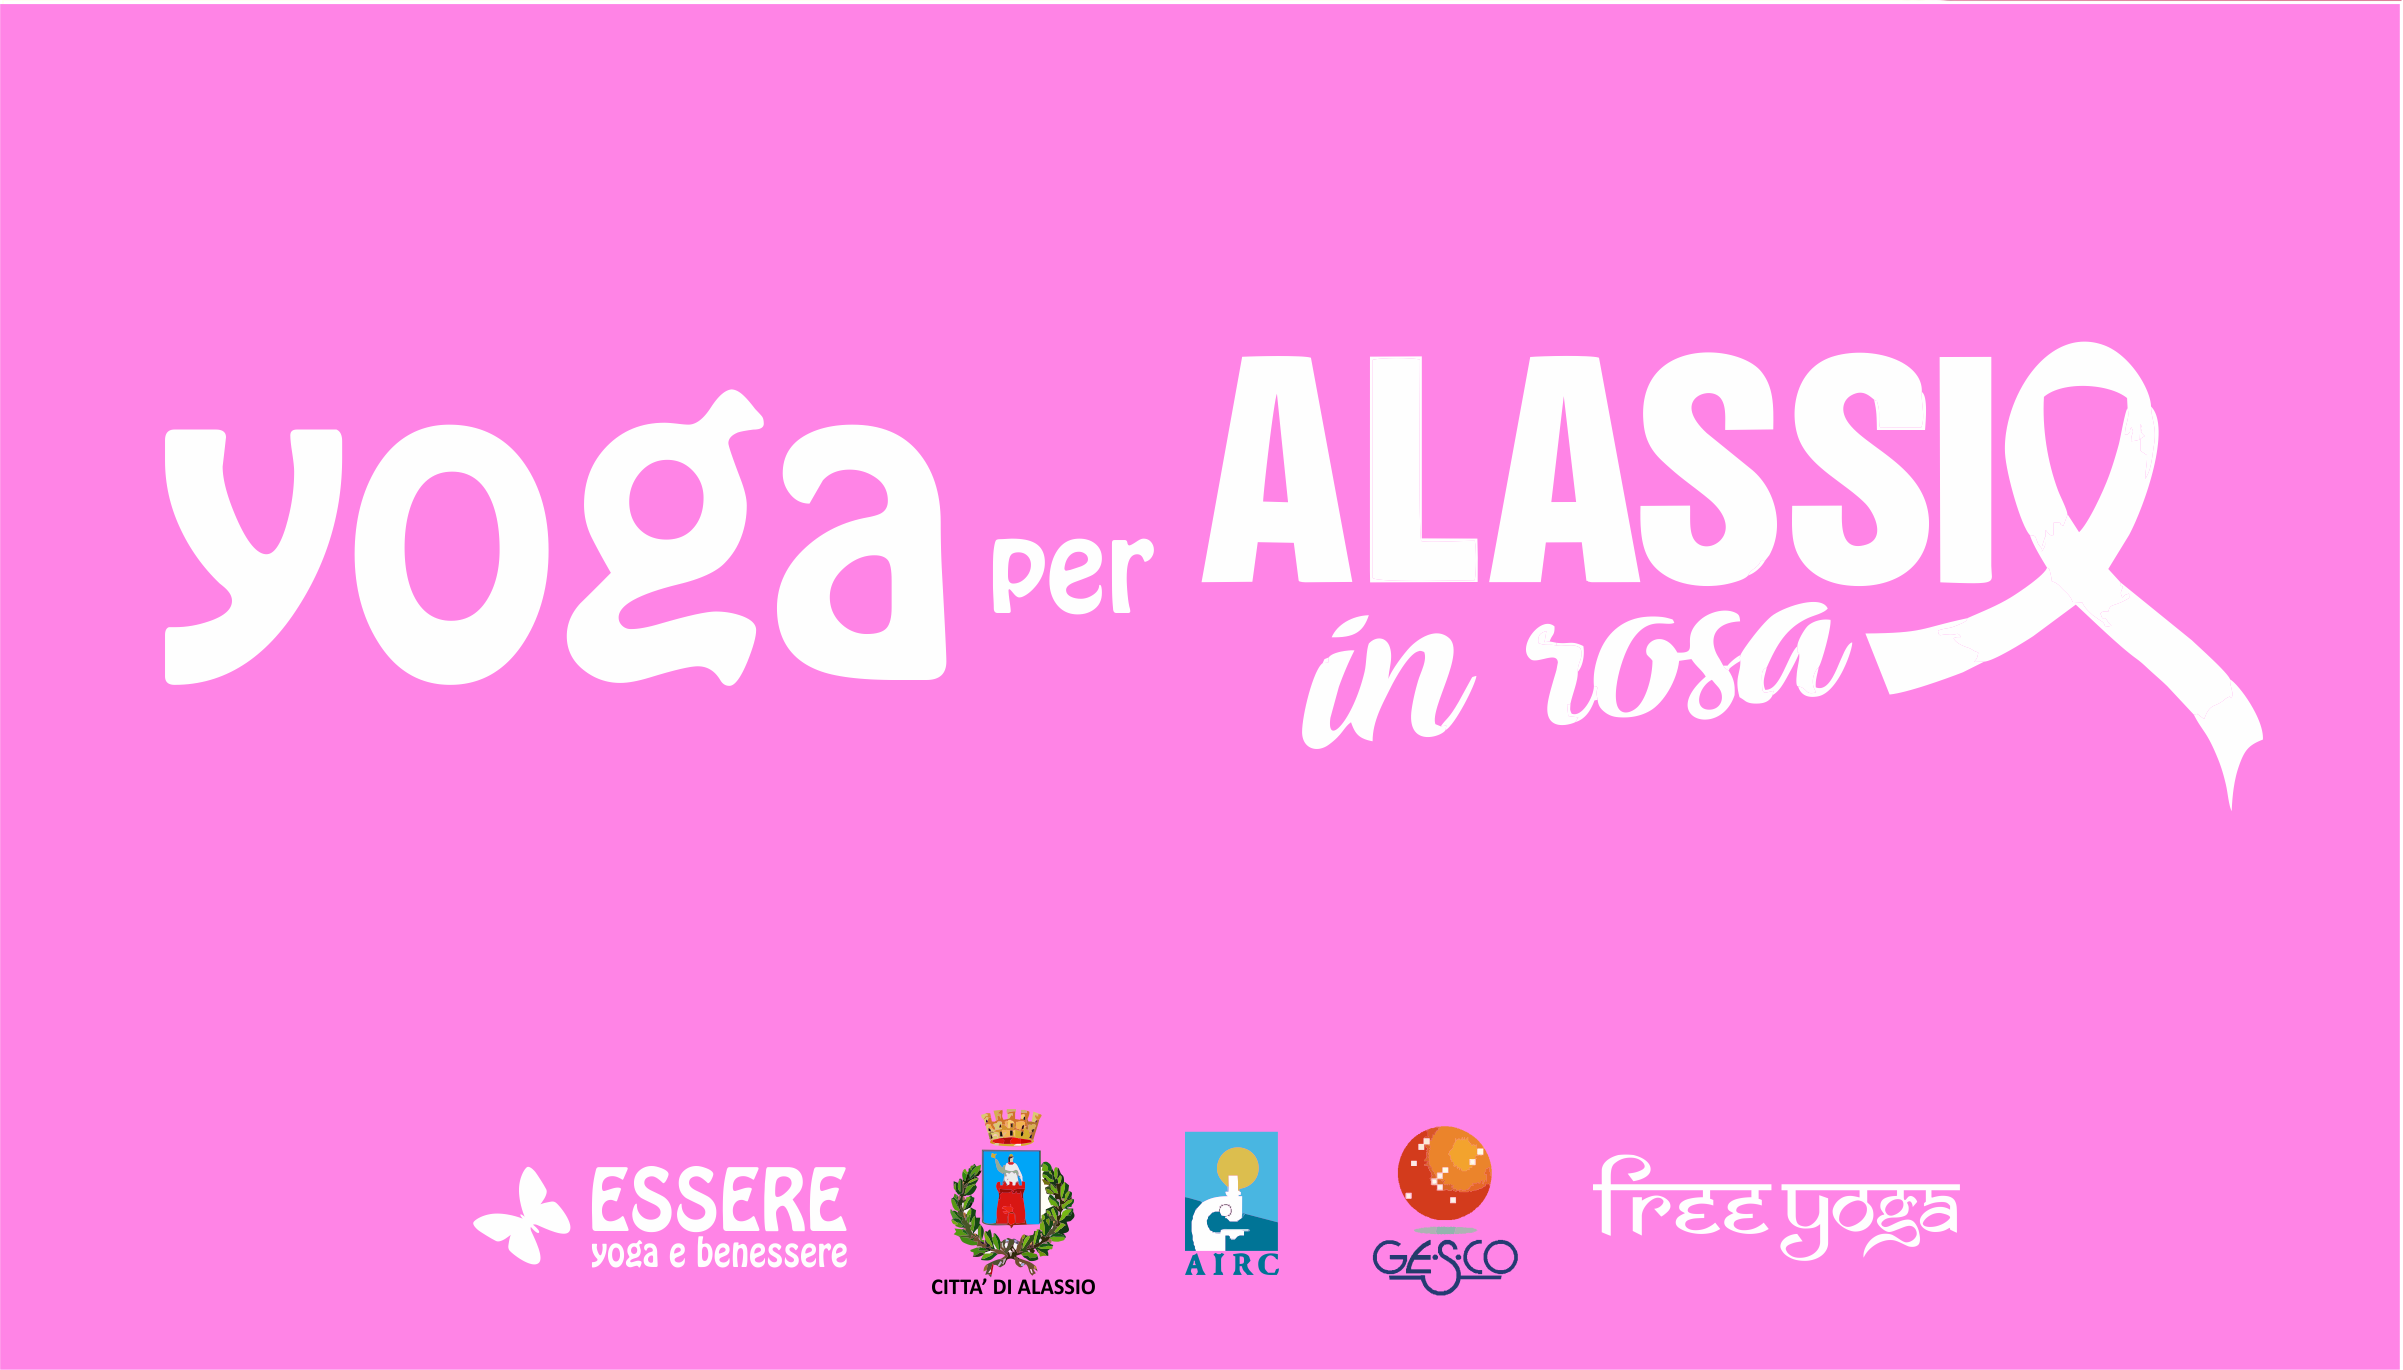 yoga-rosa-alassio-molo-gratuito-free-essere-benessere-lucia-ragazzi-esperienz-wellness-wellbeing-città-gesco-donne-prevenzione-airc-tumori-socia-libertas-anas-liguria-